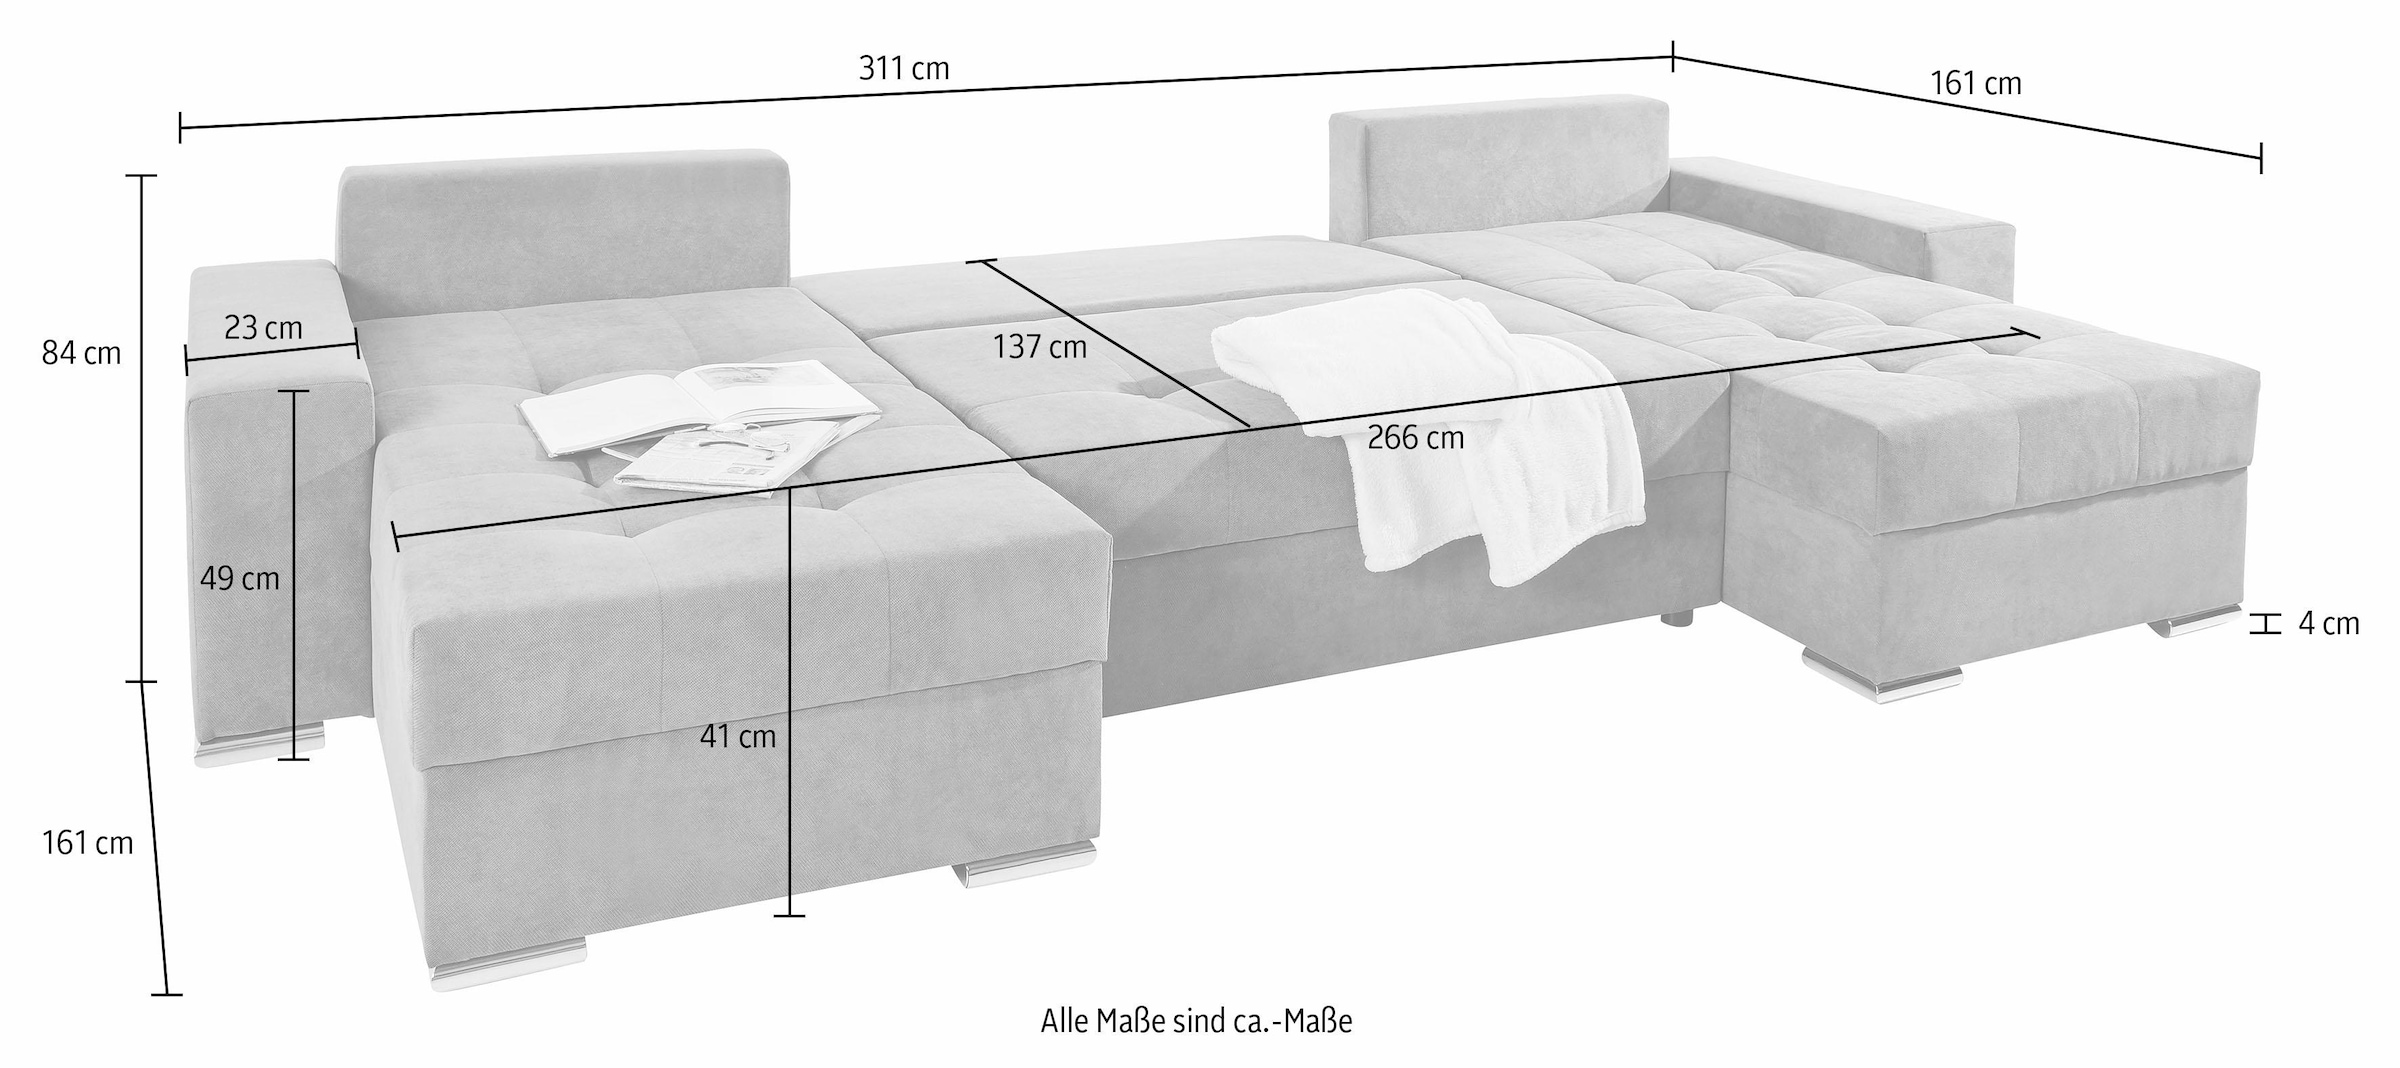 COLLECTION AB Wohnlandschaft »Josy U-Form«, inkl. Bettfunktion, Bettkasten und Zierkissen, mit 2 Recamieren